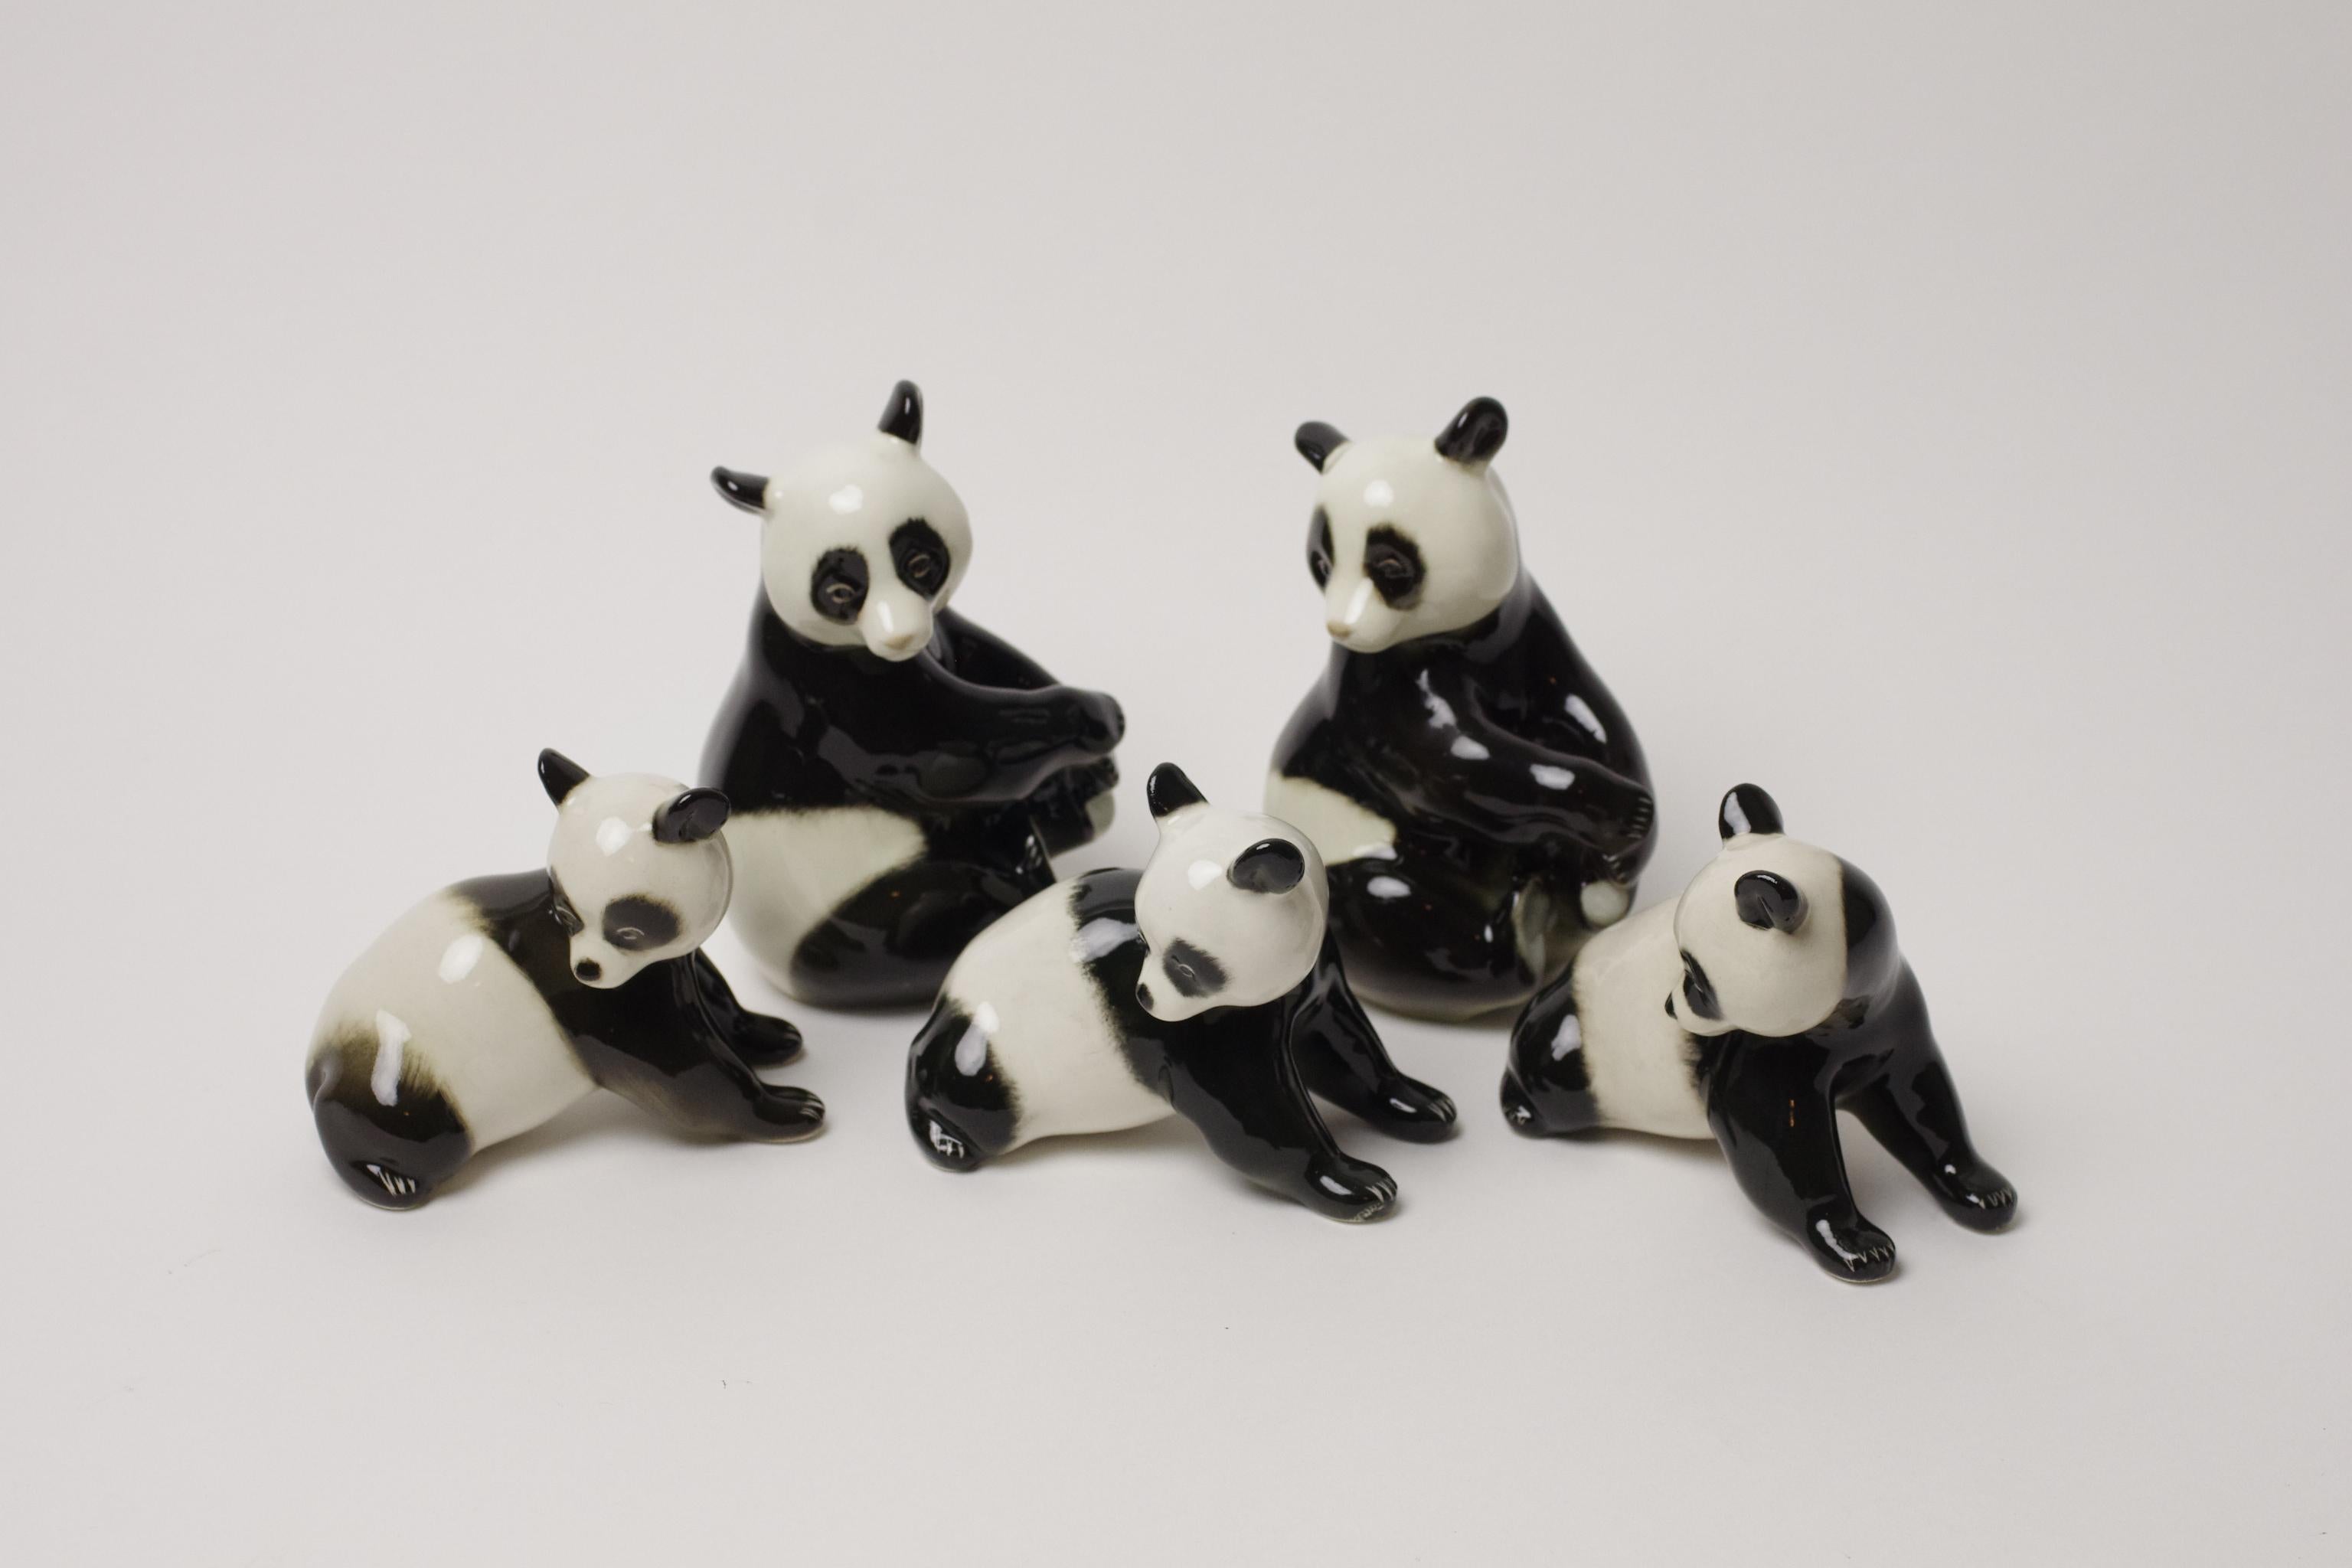 Description du produit :
Cette adorable famille de pandas a été conçue et créée par la manufacture de porcelaine Lomonosov. L'entreprise existe toujours et ce design est toujours produit, mais les pandas proposés ici sont d'époque (d'après les